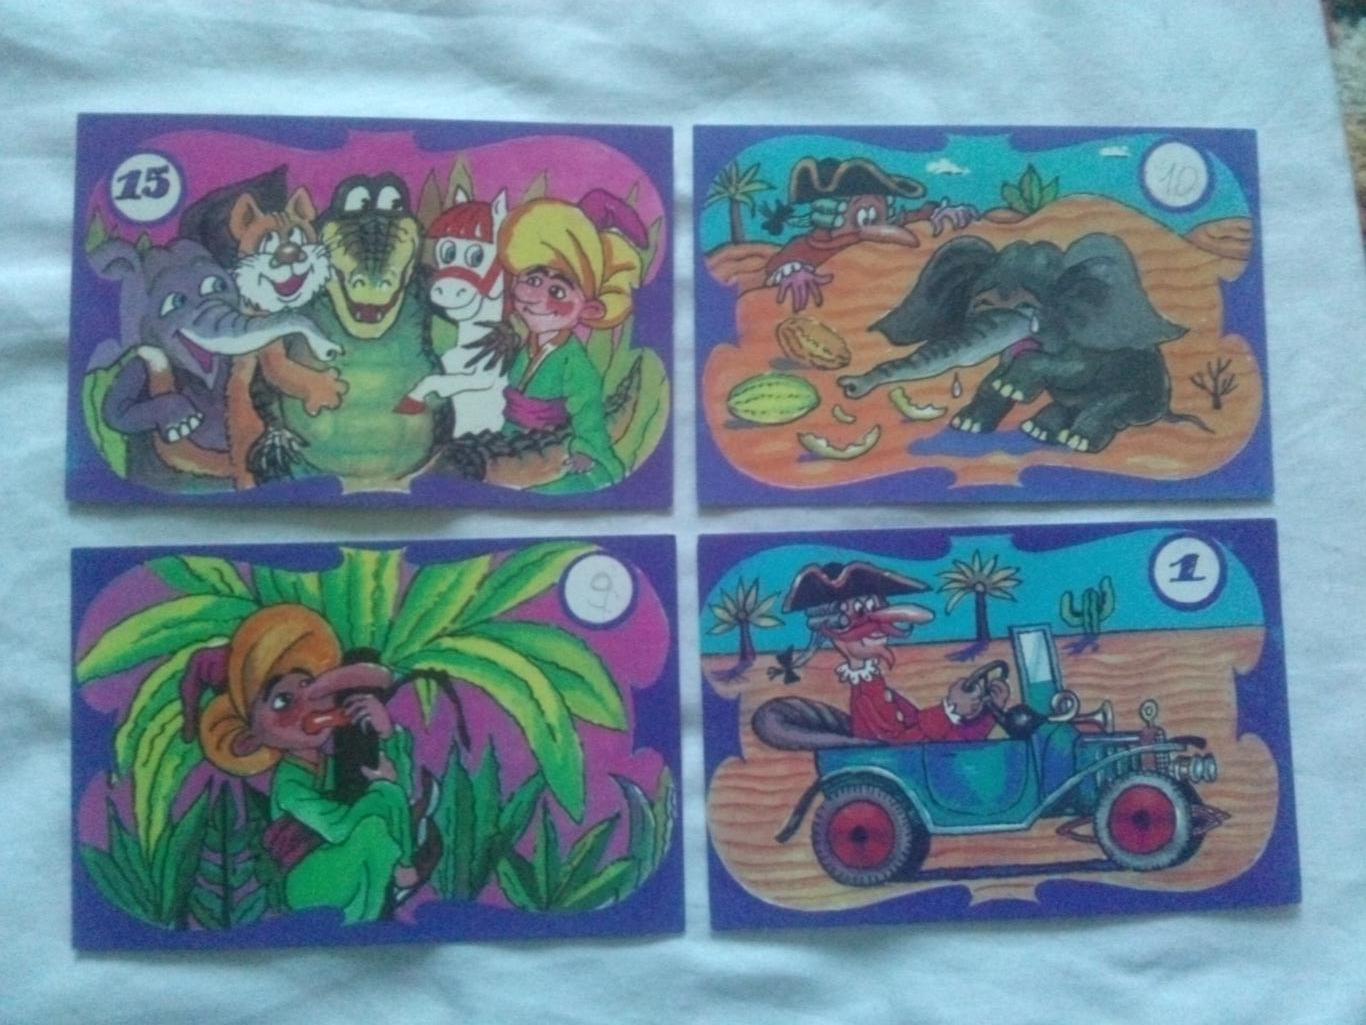 А кончилось всё хорошо 1991 г. полный набор - 15 открыток (мультфильм , сказка) 3